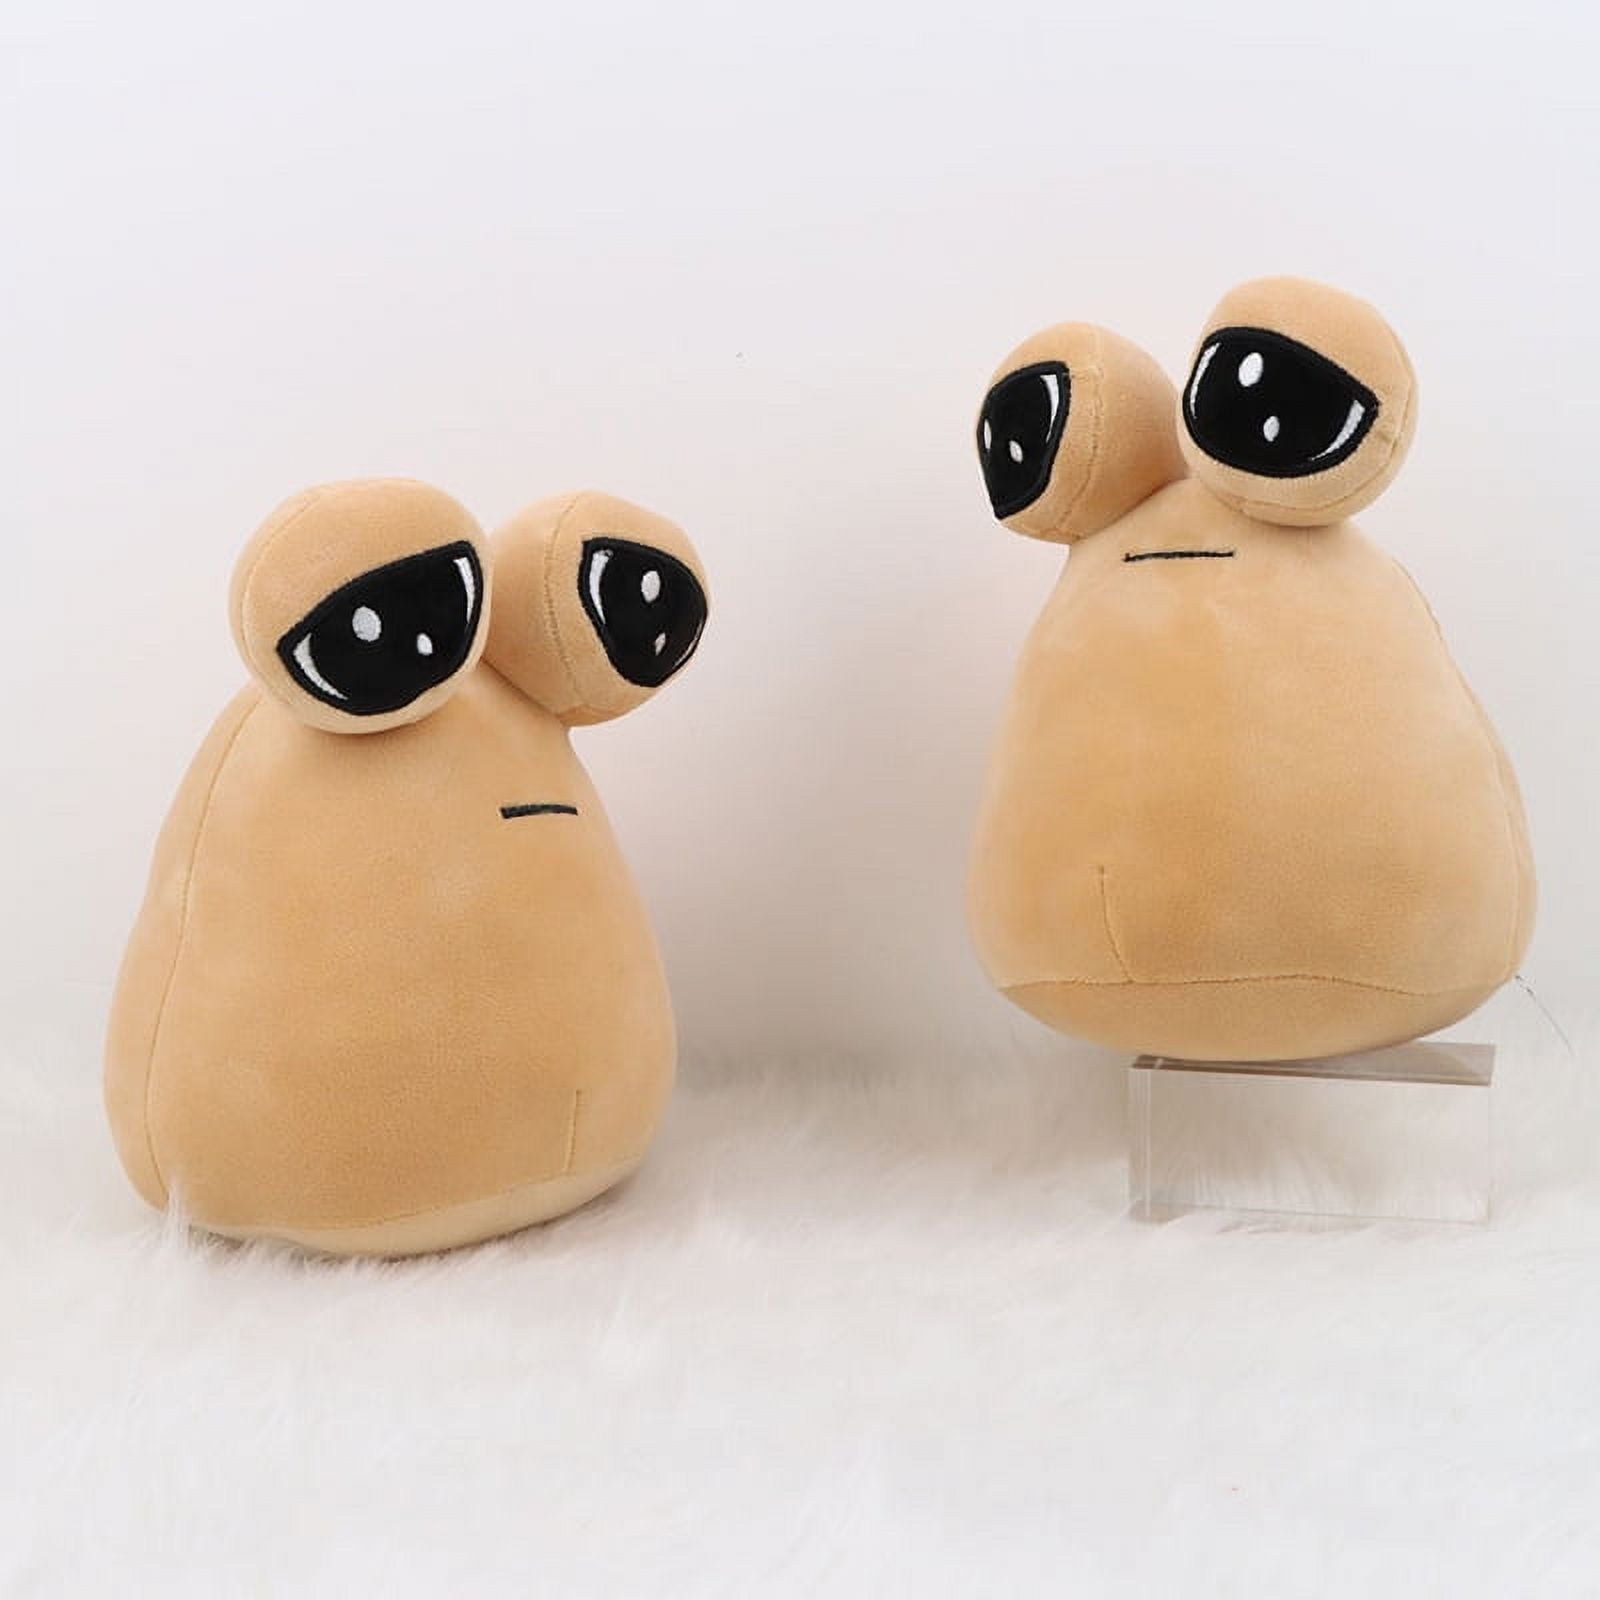 My Pet Alien Pou Plush Toy diburb Emotion Alien Plushie Stuffed